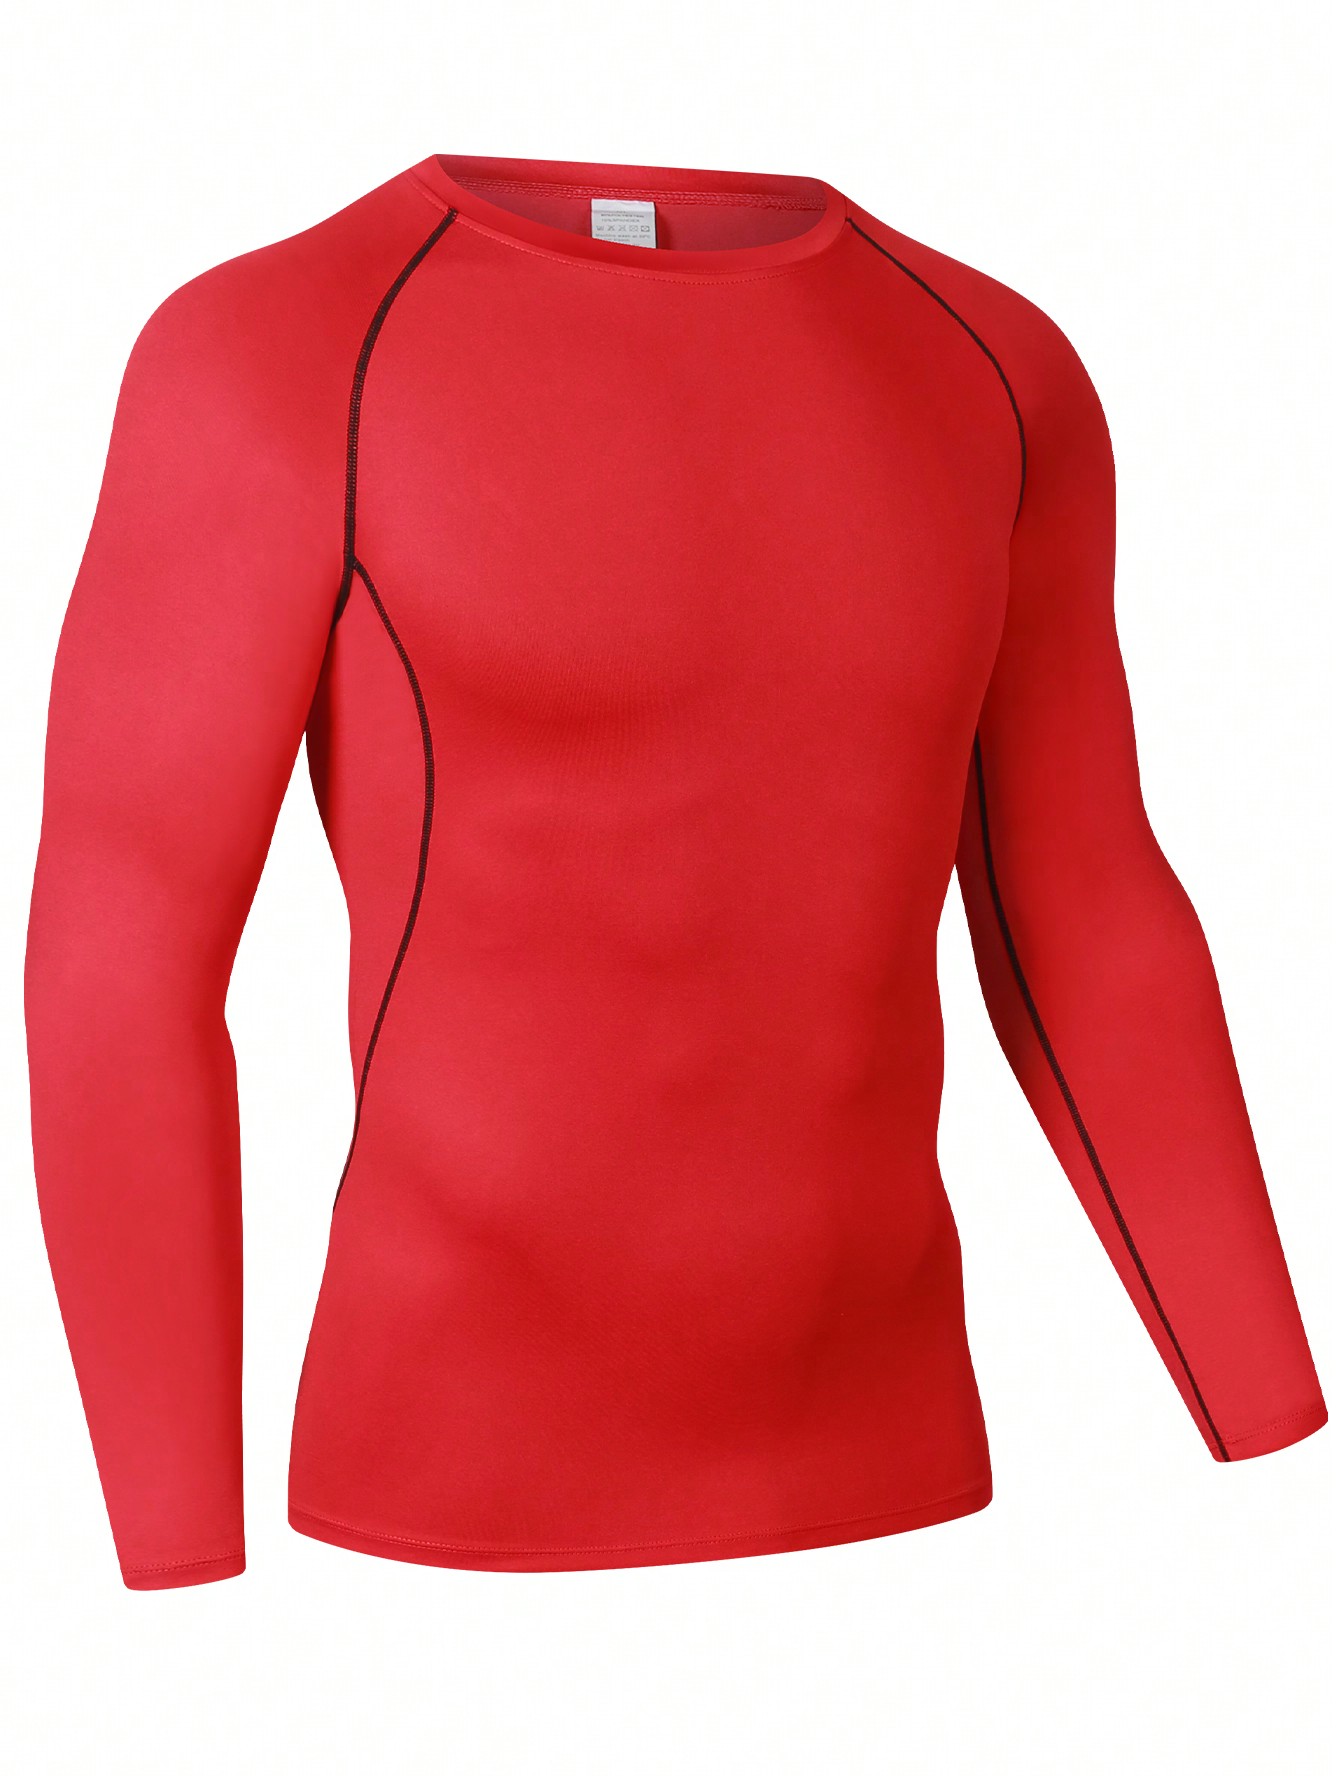 Мужская эластичная компрессионная рубашка для фитнеса с длинными рукавами, красный фото